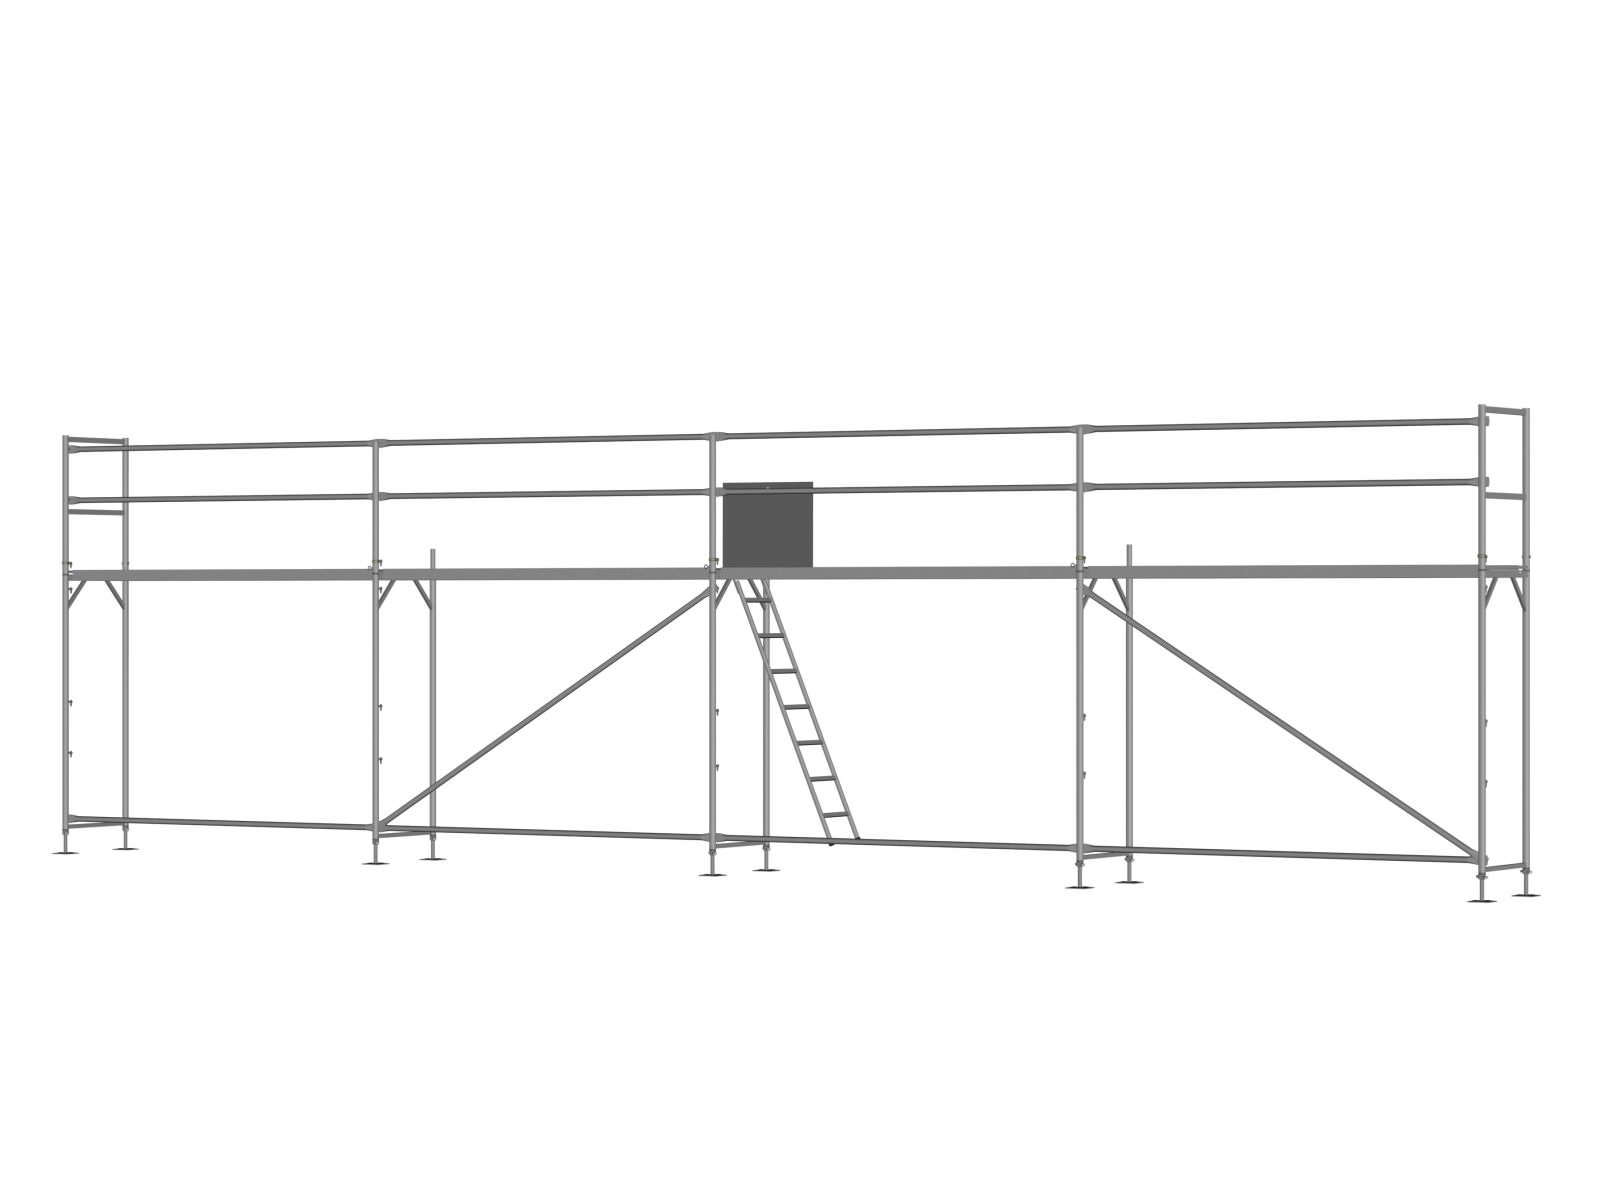 Stahl Traufseitengerüst 48 qm - 3,0 m Felder - 12 m lang - 4 m Arbeitshöhe - Basis-Gerüst inkl. Aufstieg & Befestigung